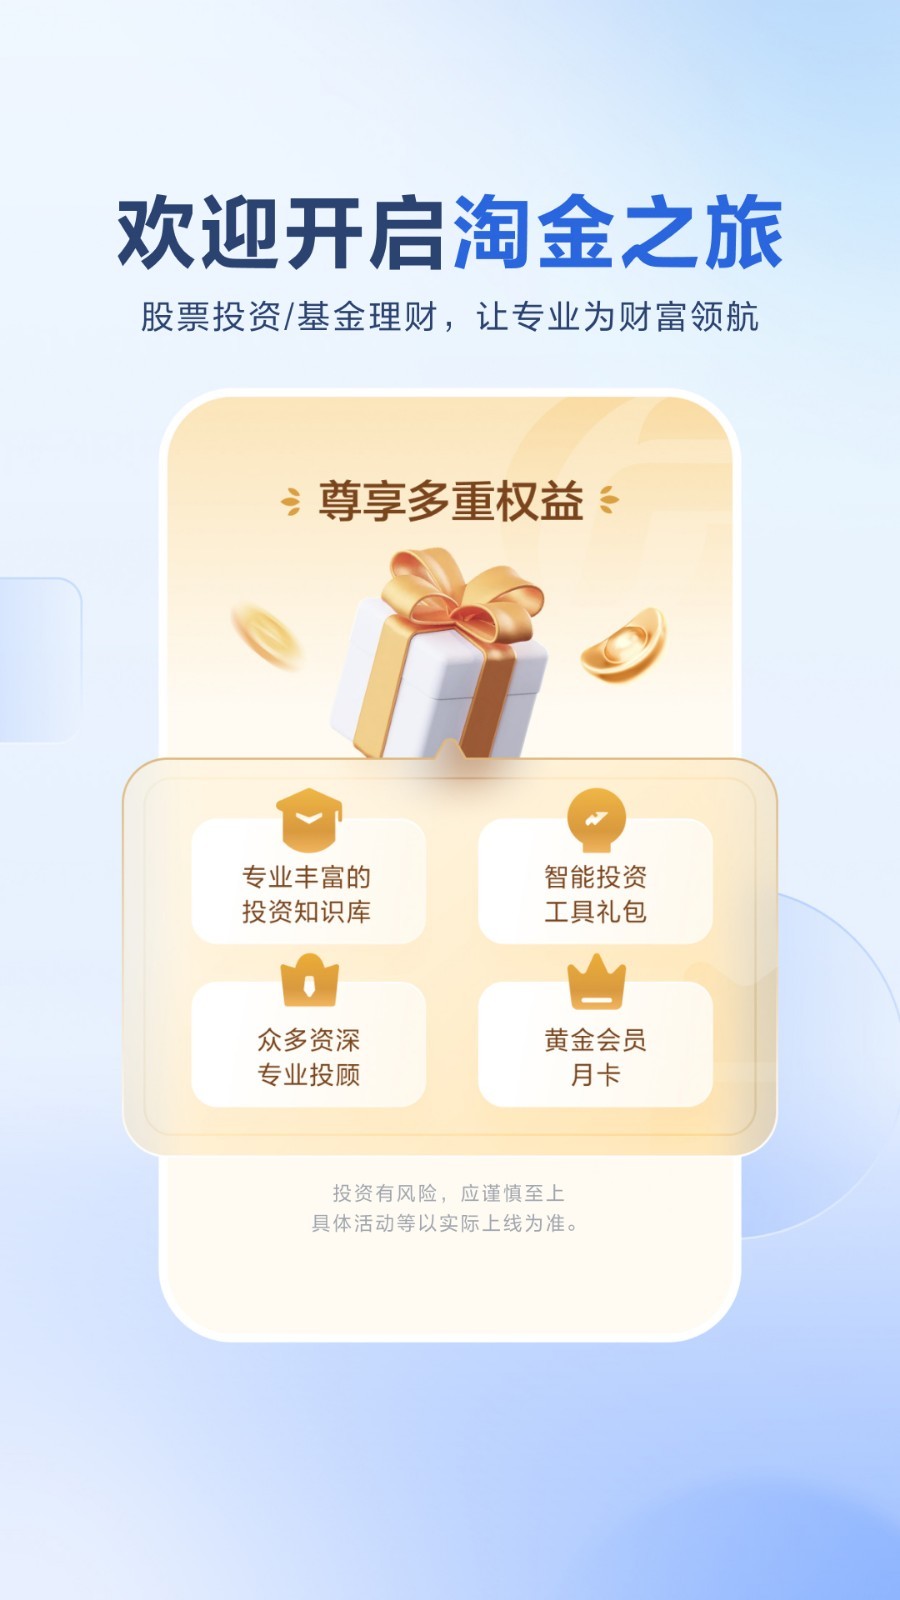 广发易淘金app是广发证券旗下的综合金融服务平台